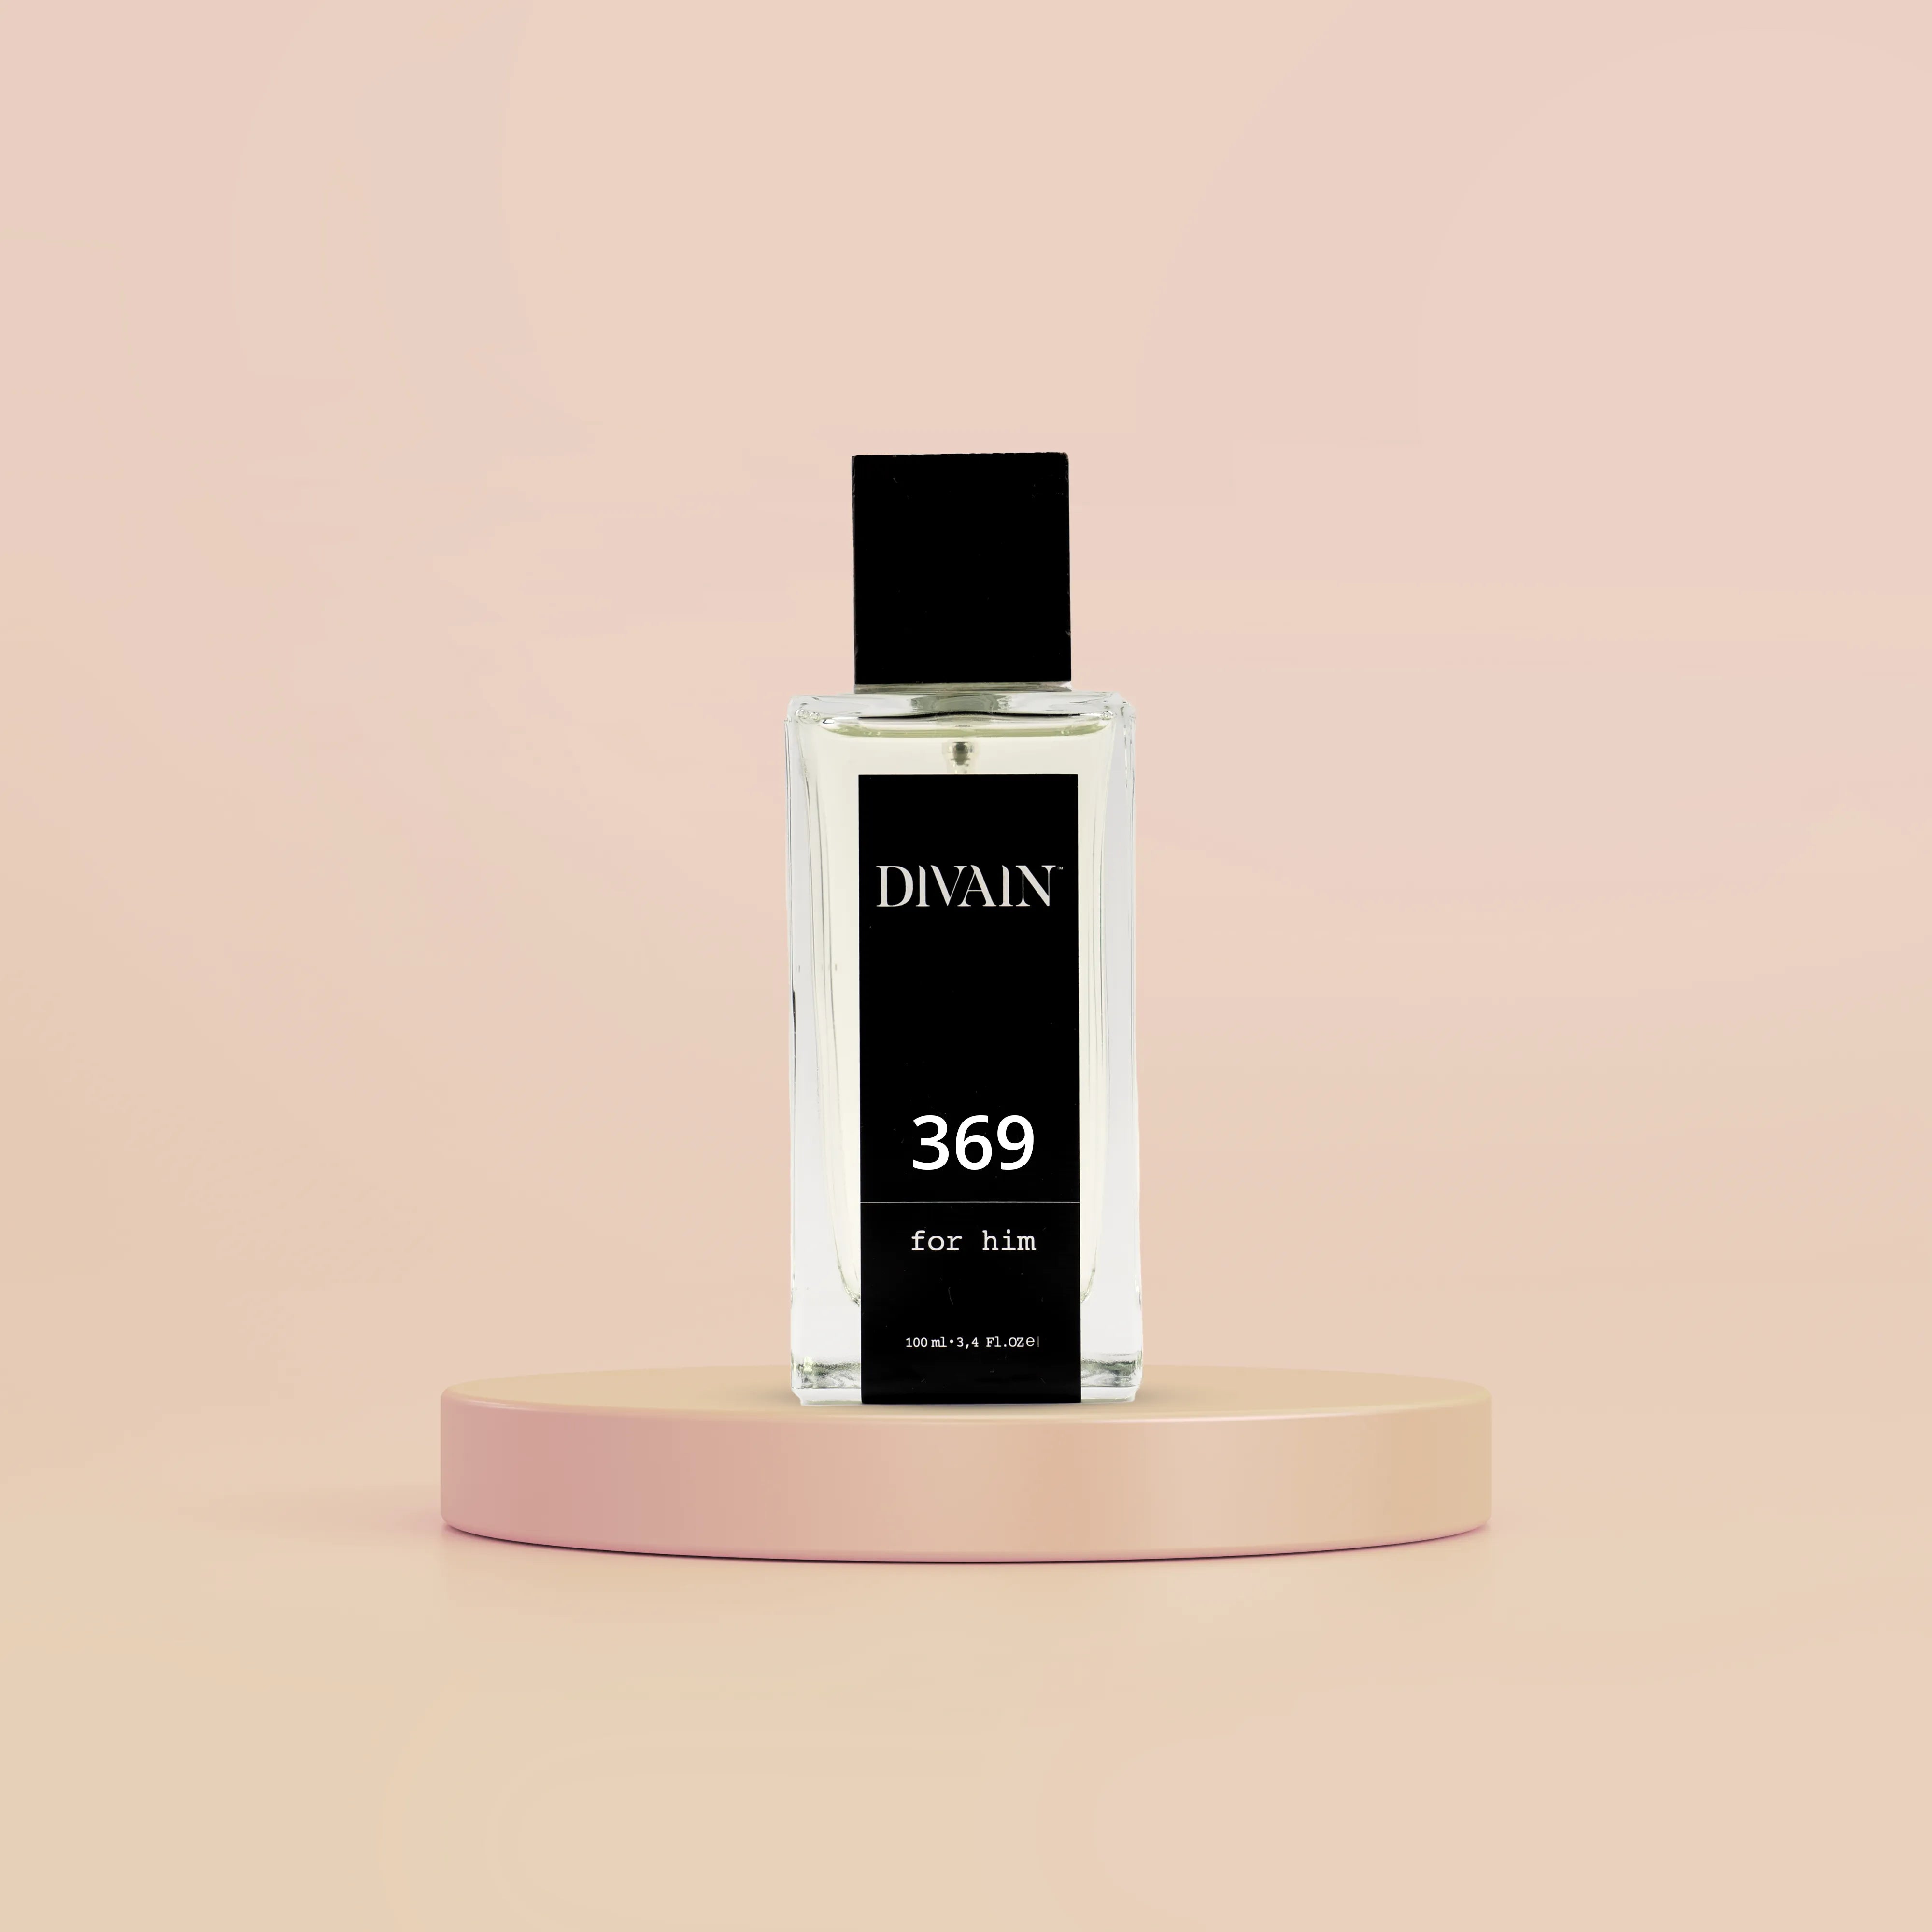 DIVAIN-369 | Similar a Sauvage Elixir de Dior | Hombre